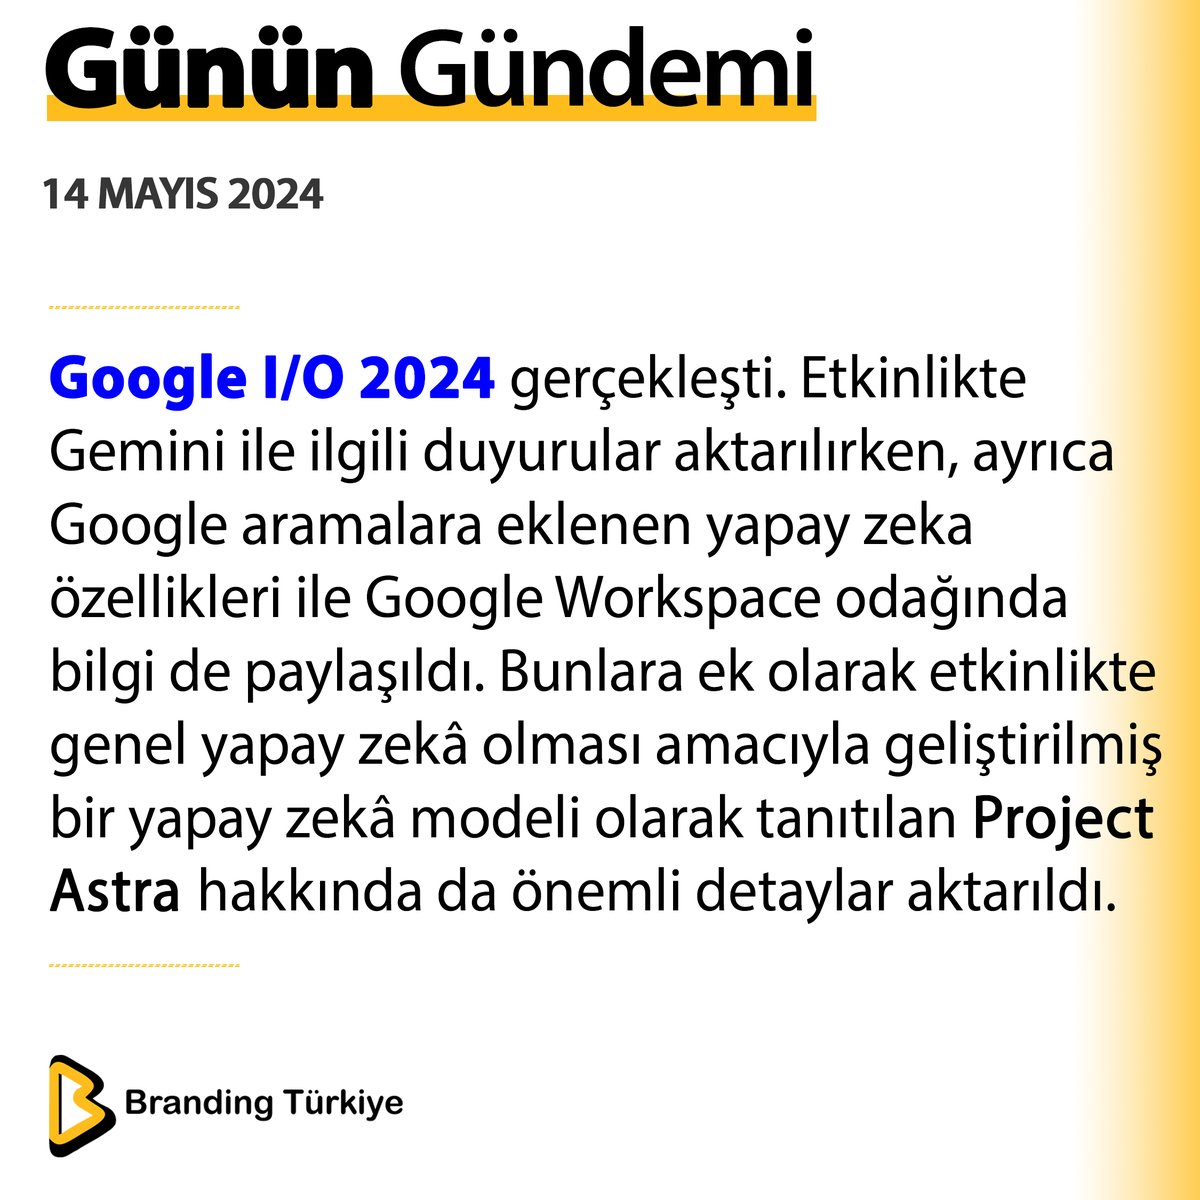 #14Mayıs2024

Google I/O 2024 gerçekleşti. 

▶ brandingturkiye.com
#BrandingTürkiye #Haberler #Google #YapayZeka #GoogleEvent #GoogleWorkspace #GoogleSearch #ProjectAstra #Etkinlik #SonDakika #Noluyor